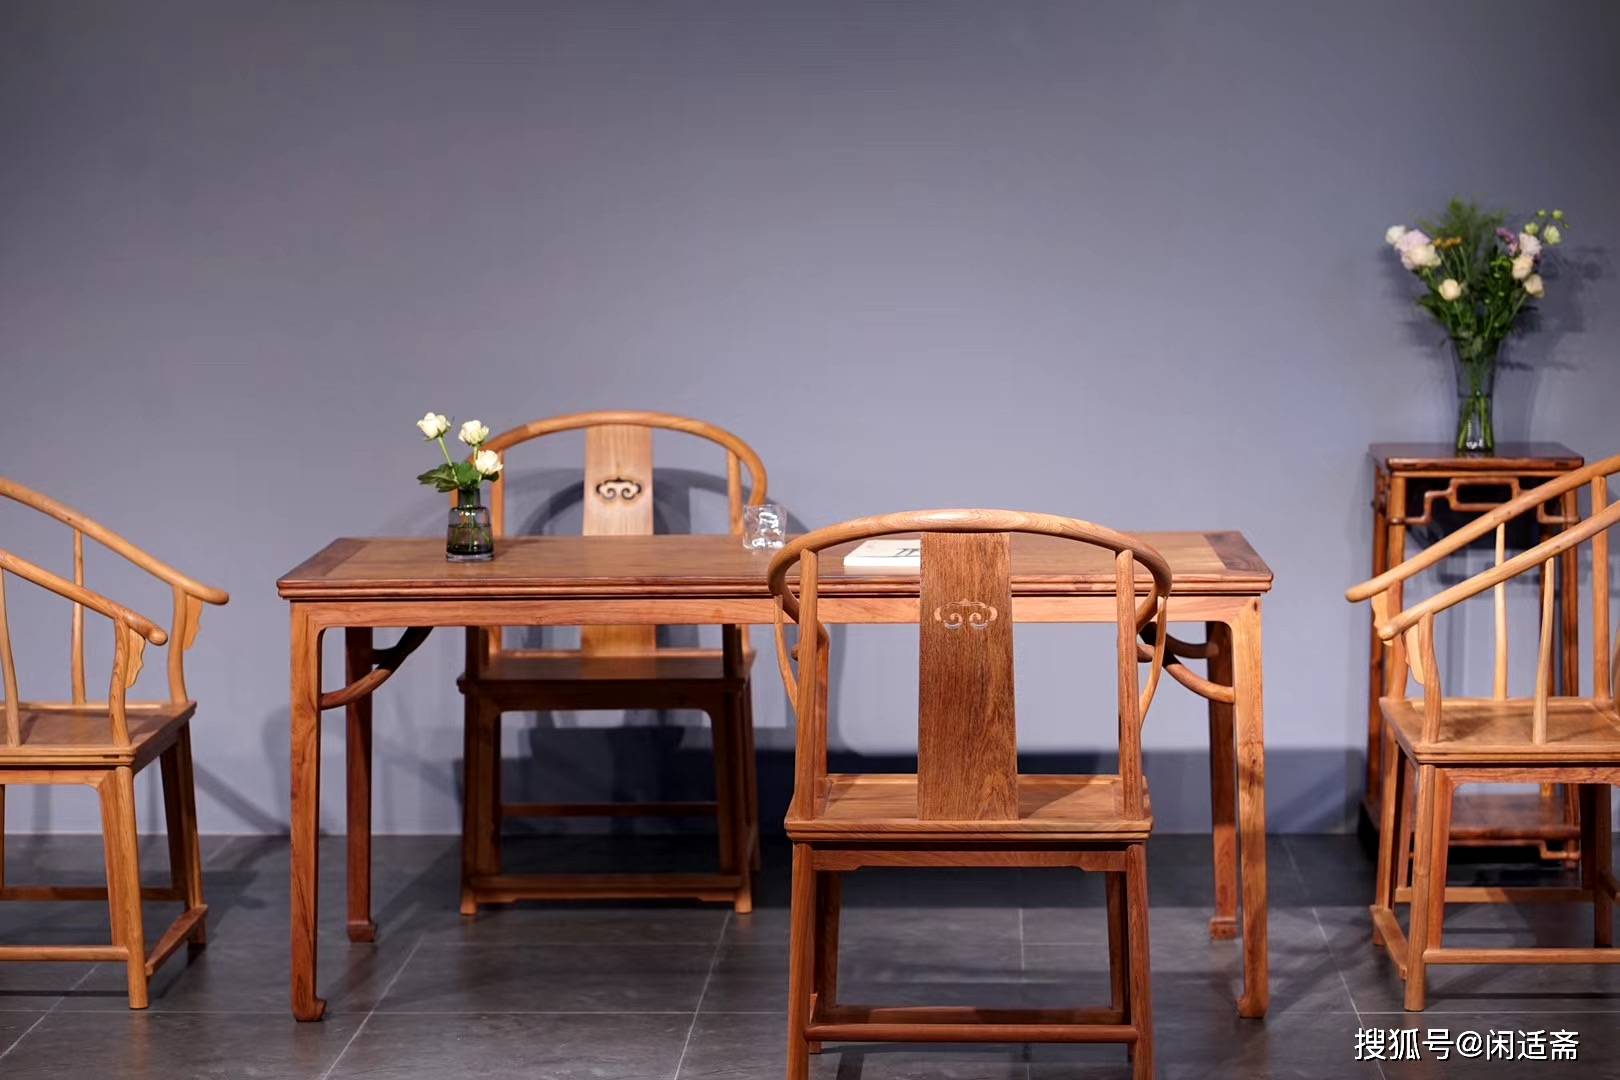 原创茶室营造,缅甸花梨木,中式干泡茶桌,红木家具